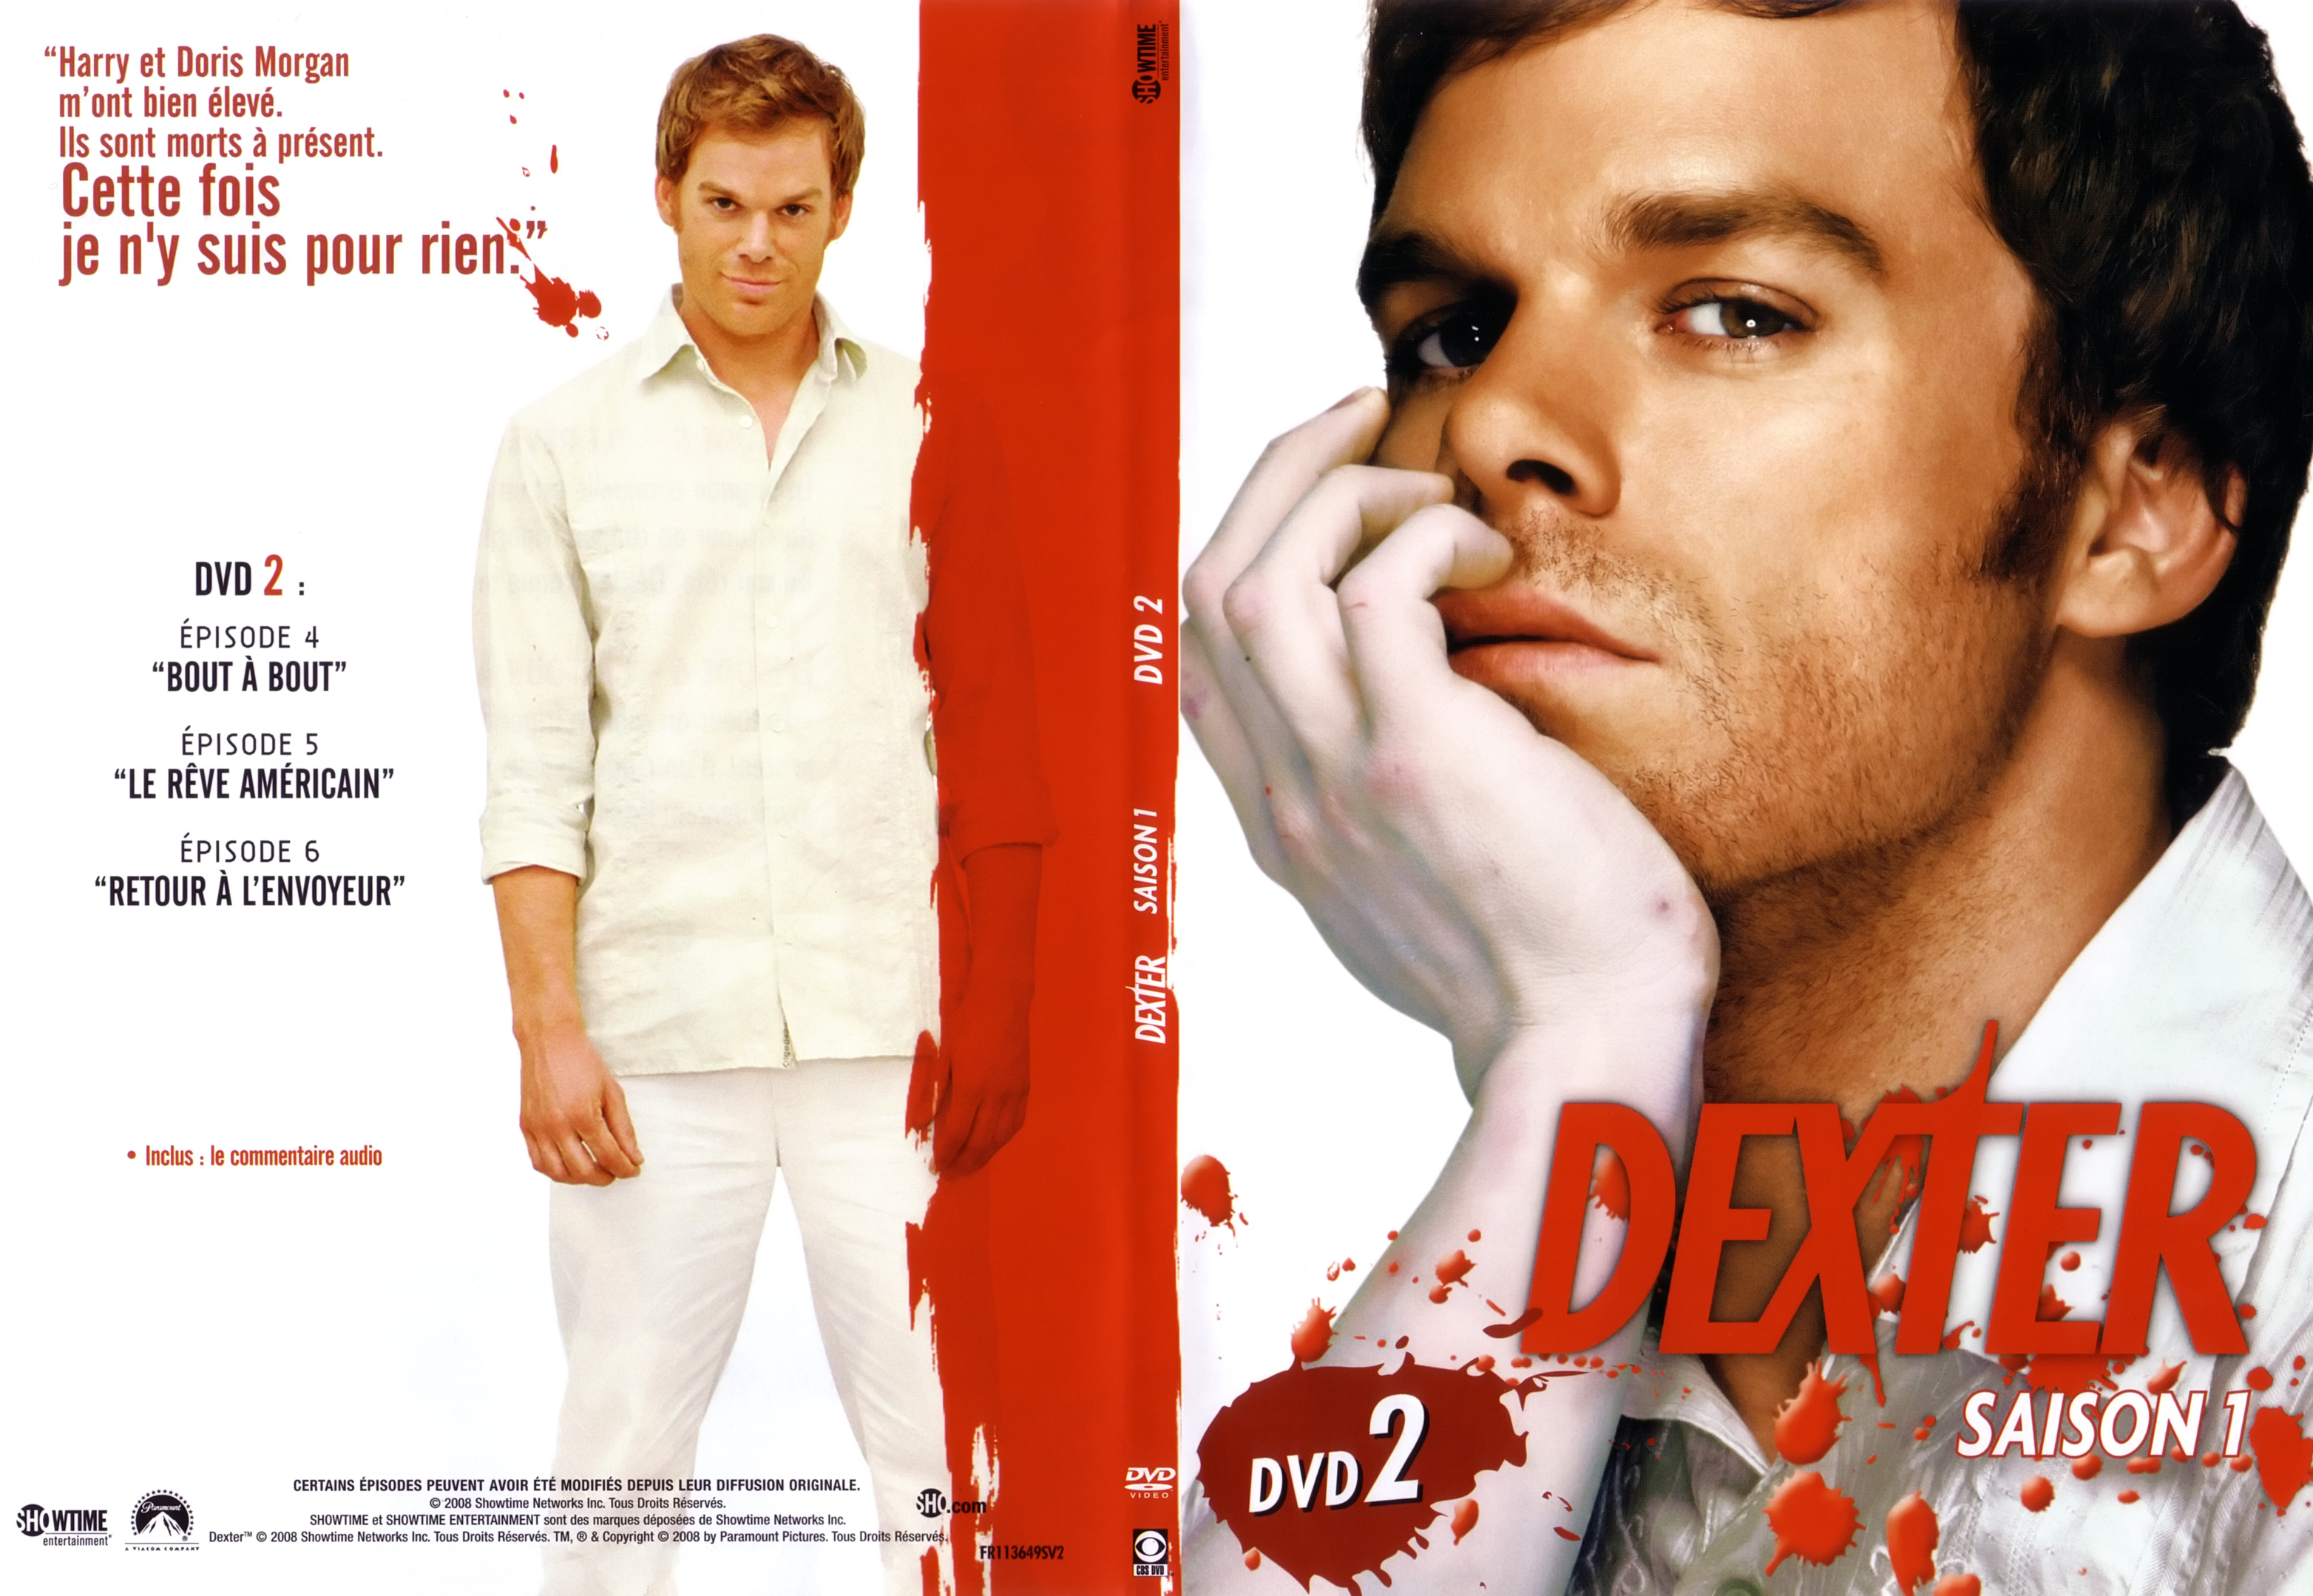 Jaquette DVD Dexter saison 1 DVD 2